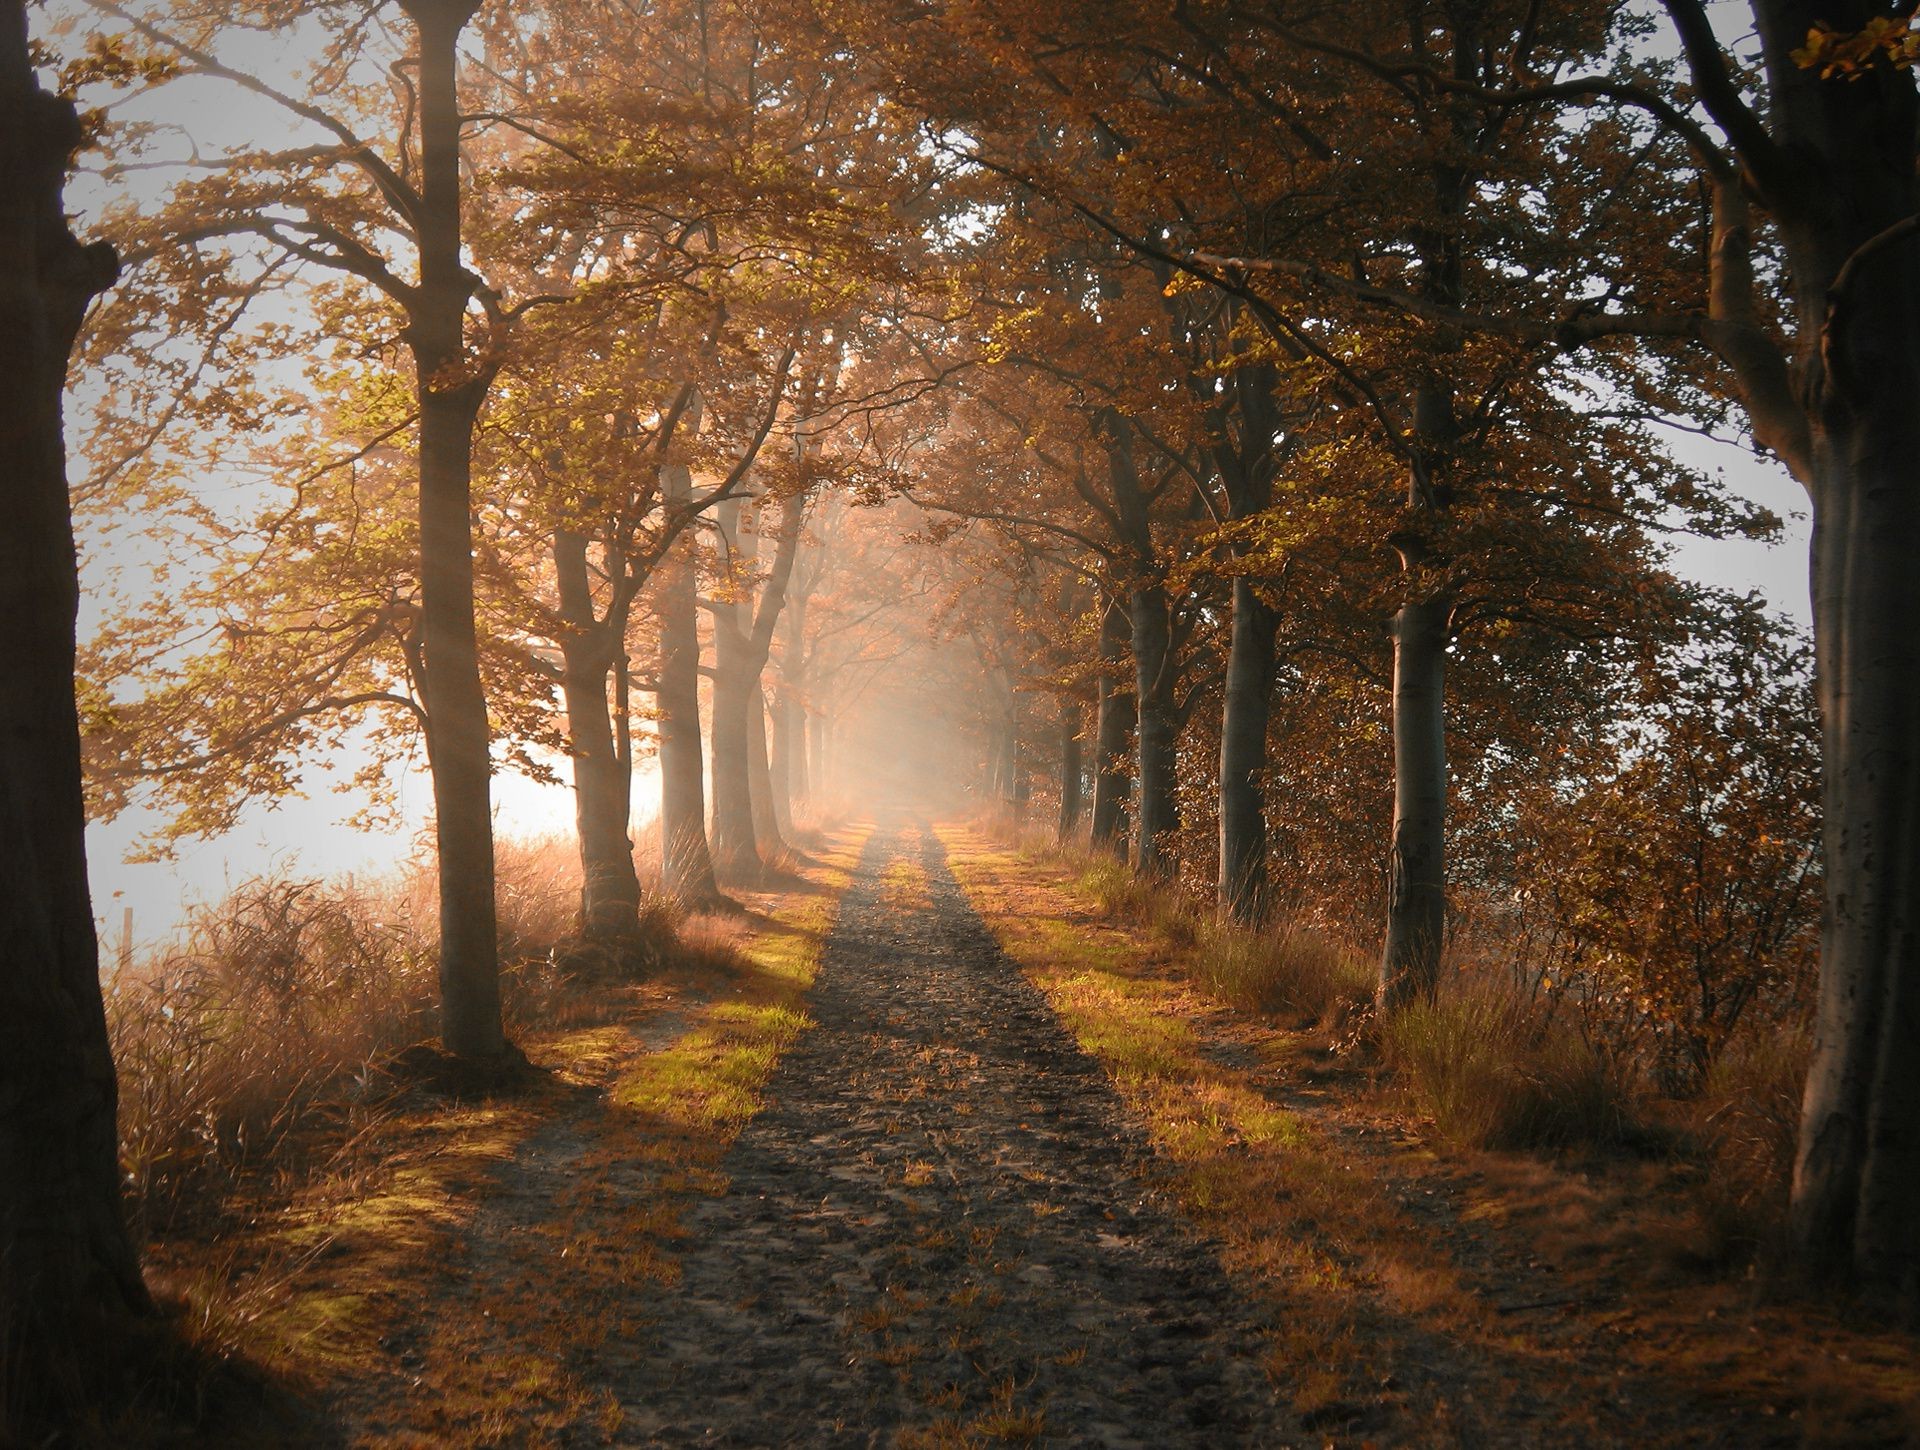 осень дерево осень туман туман рассвет пейзаж древесины свет лист аллея дорога парк тень руководство тайна подсветкой хорошую погоду на открытом воздухе природа